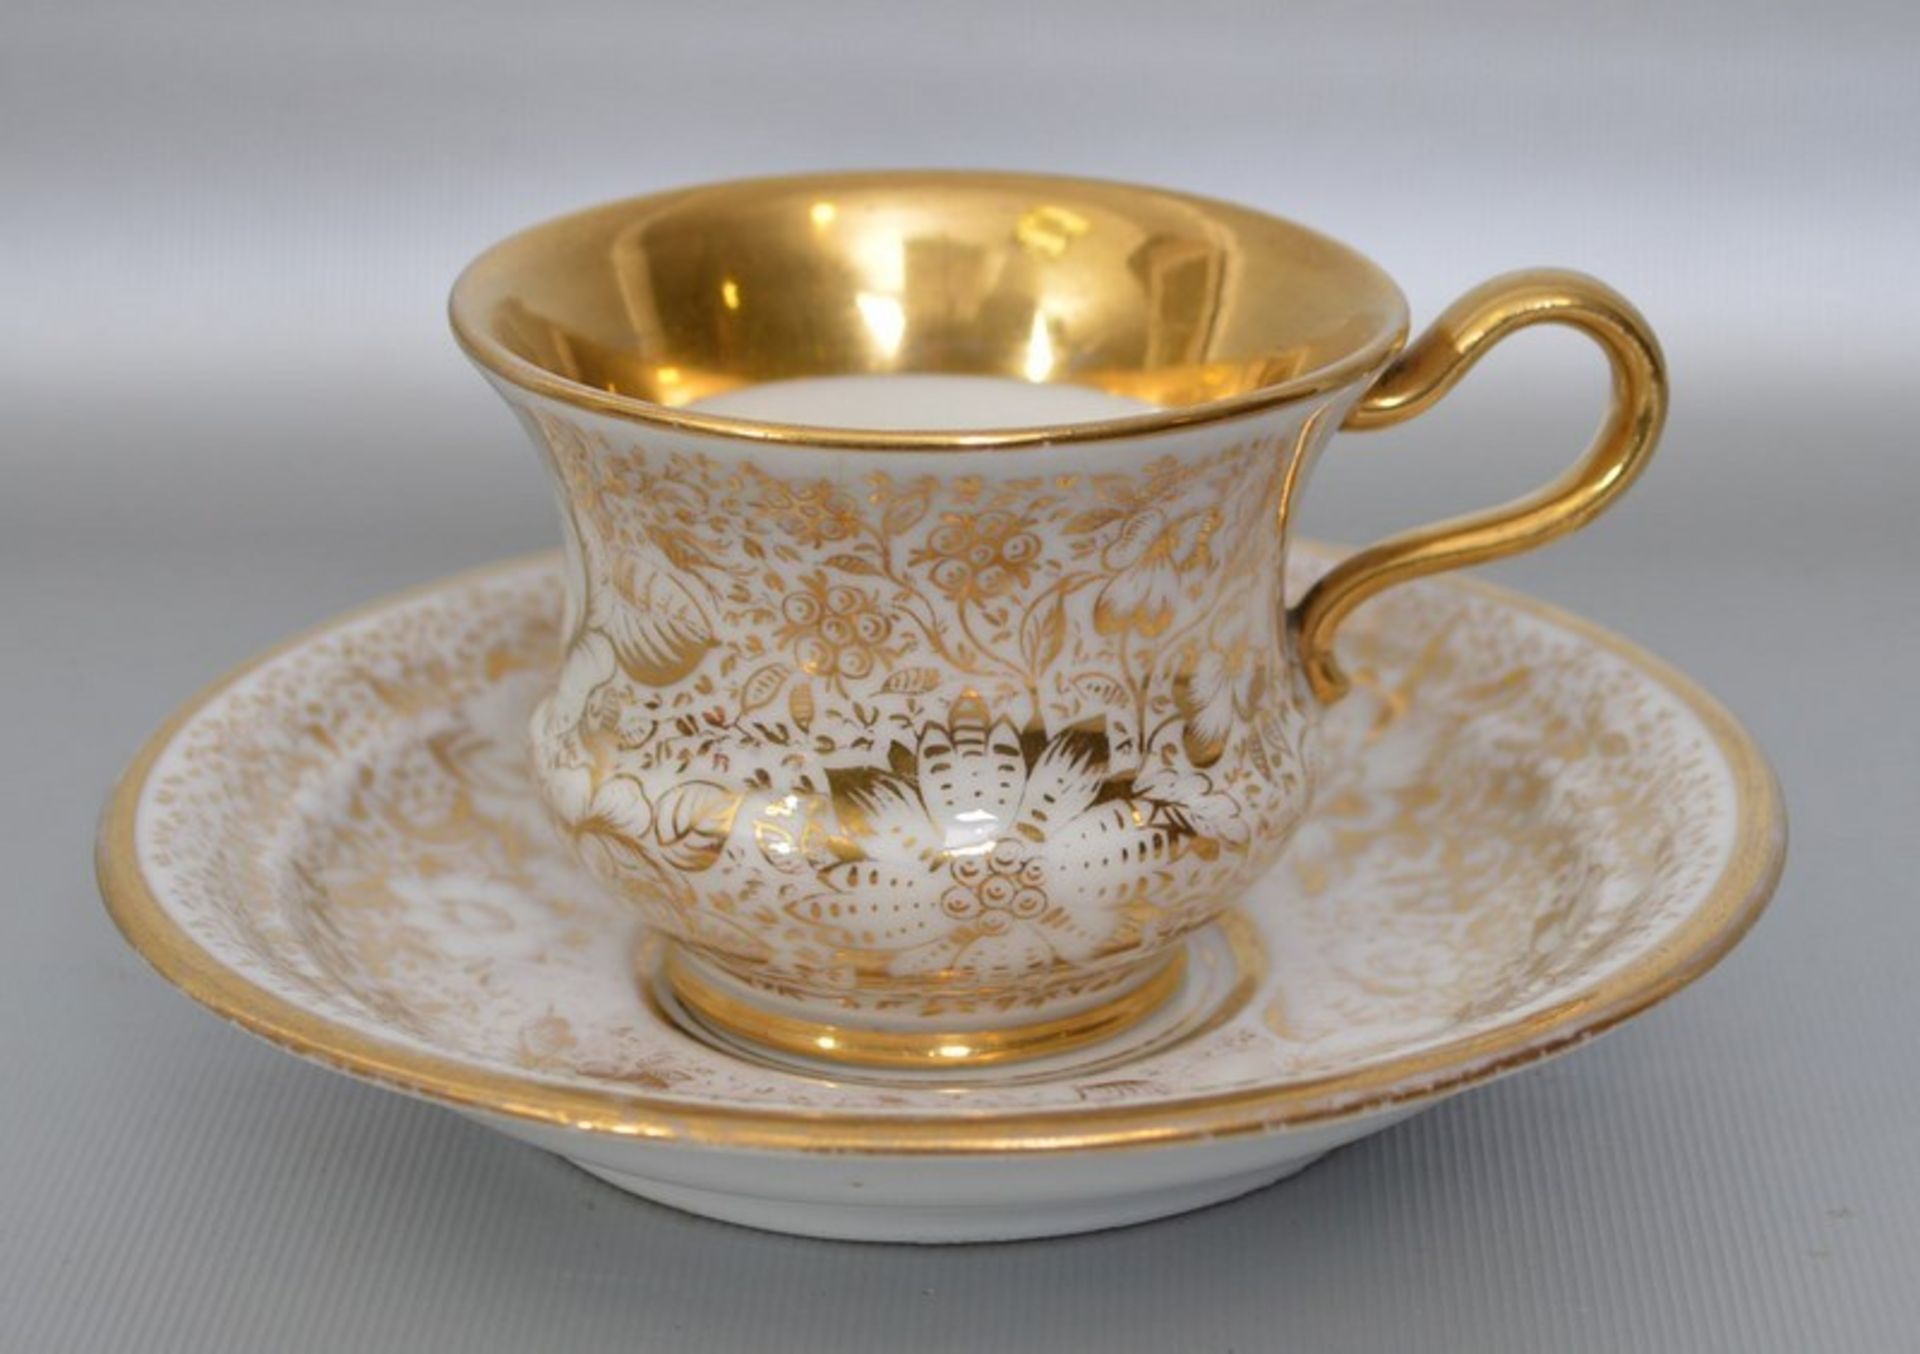 Tasse mit Untertasse, breiter verzierter Goldrand und gold verziert, 19. Jh.